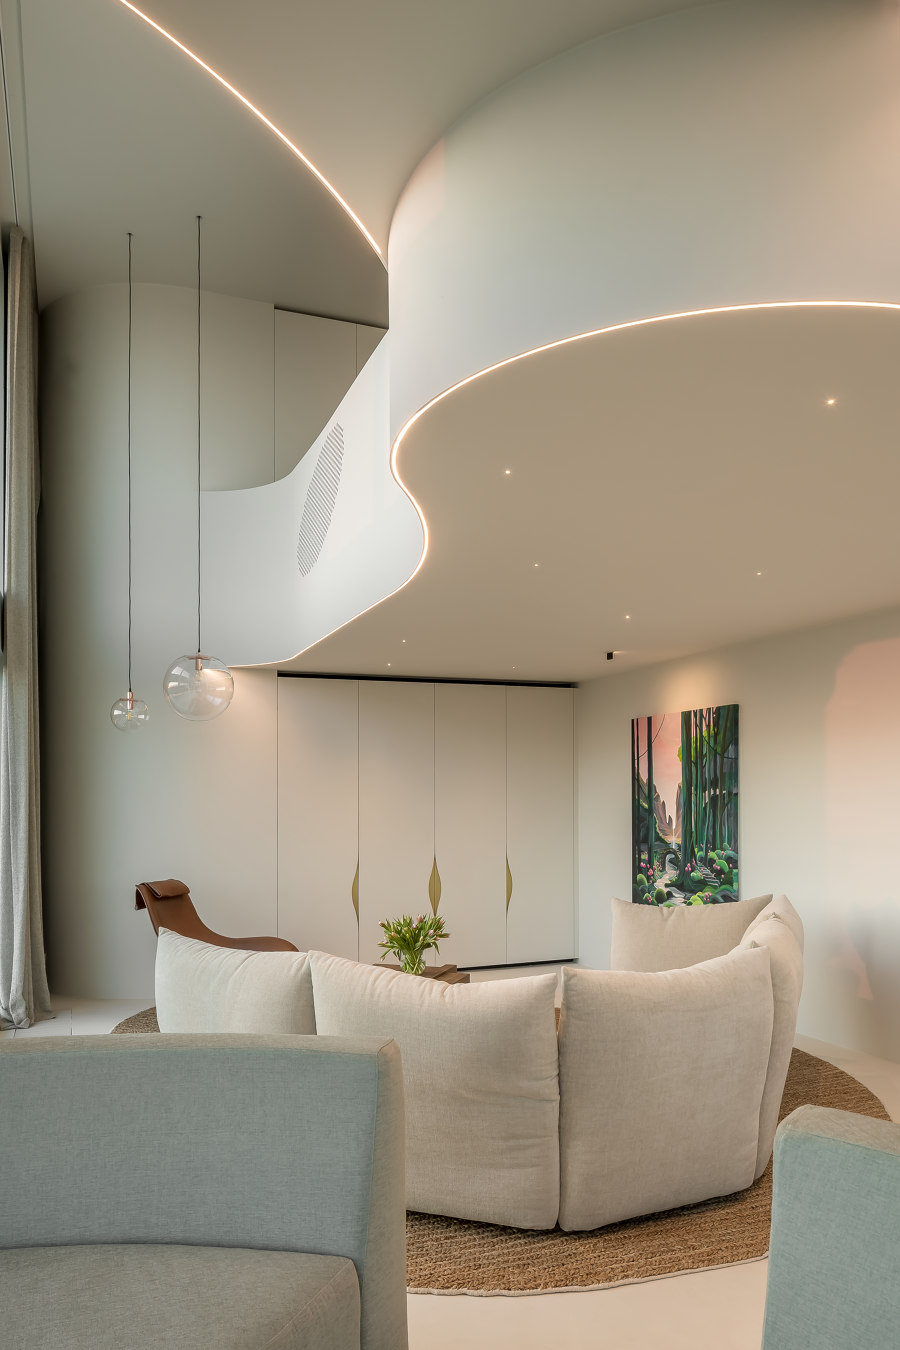 Duplex Condo by Claerhout - Van Biervliet | Living space